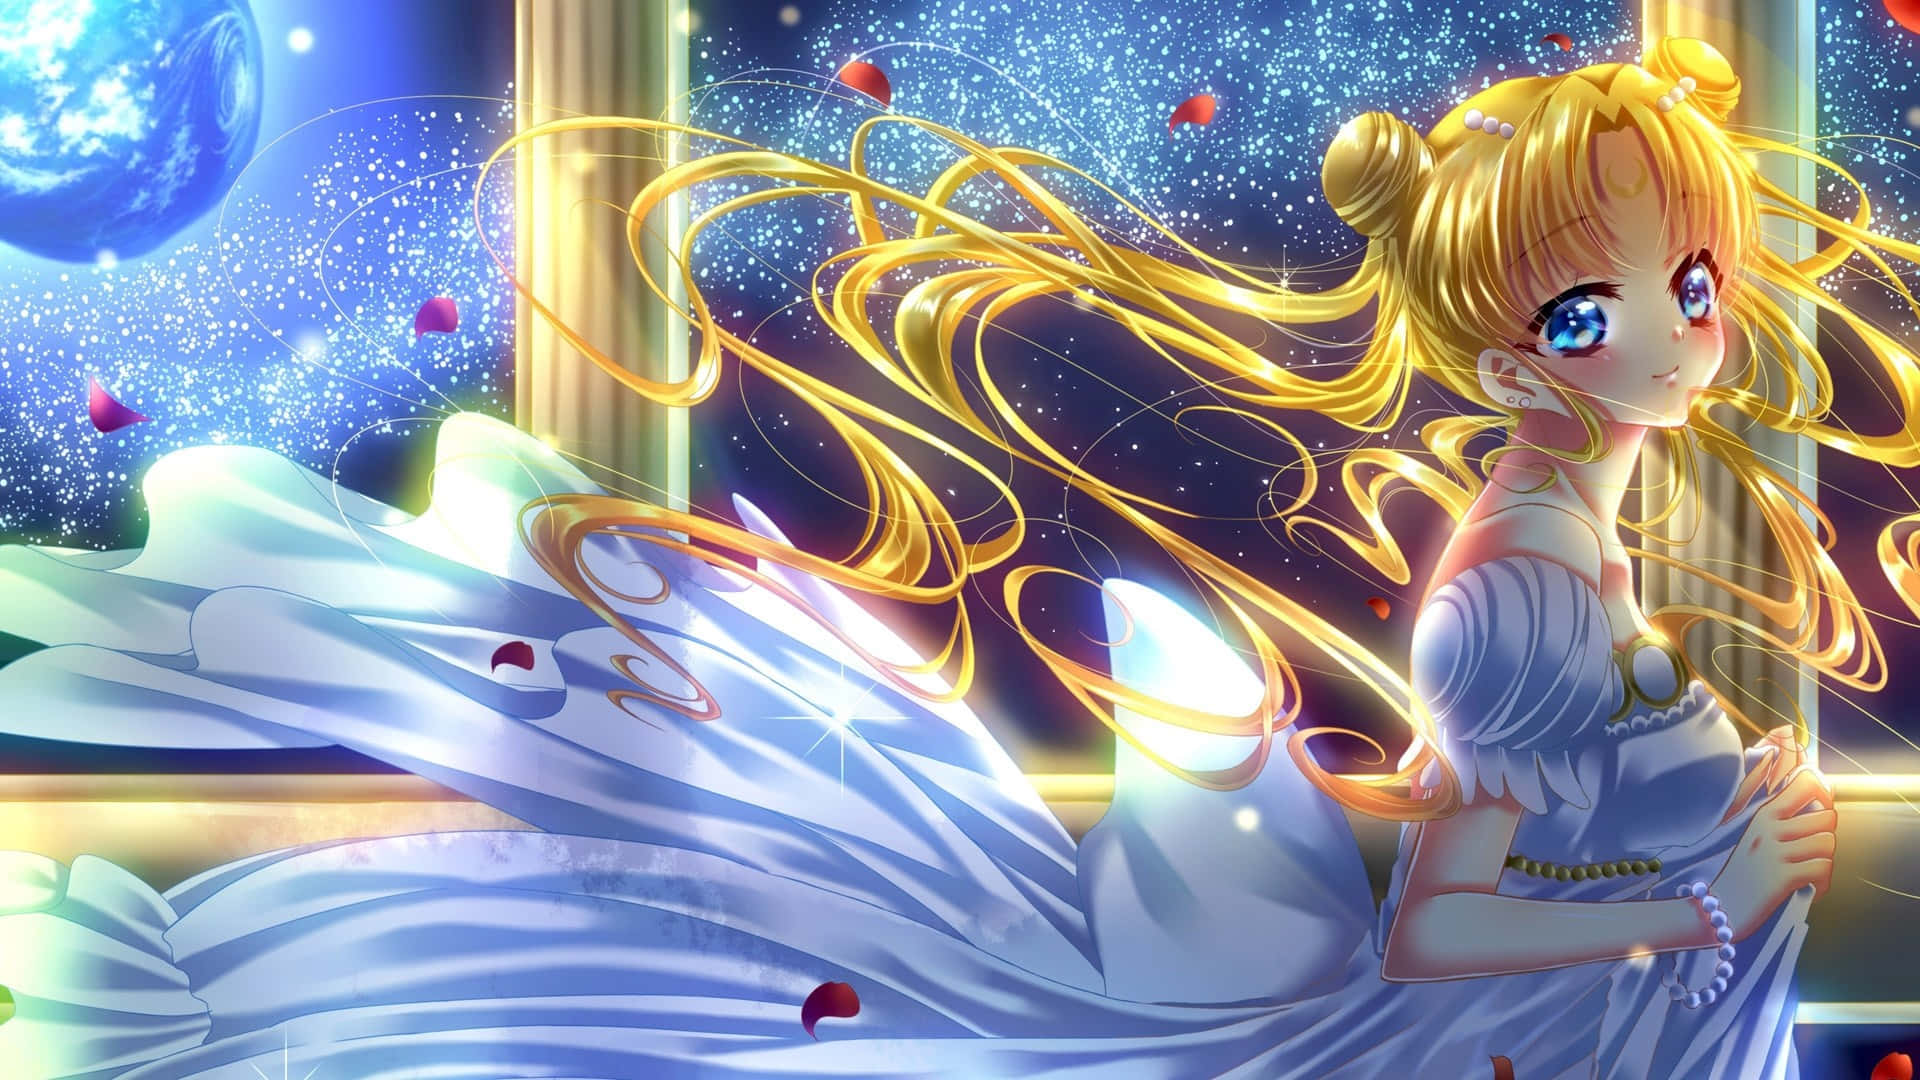 Asguardiãs Marinhas Lutam Para Proteger O Mundo Em Sailor Moon.